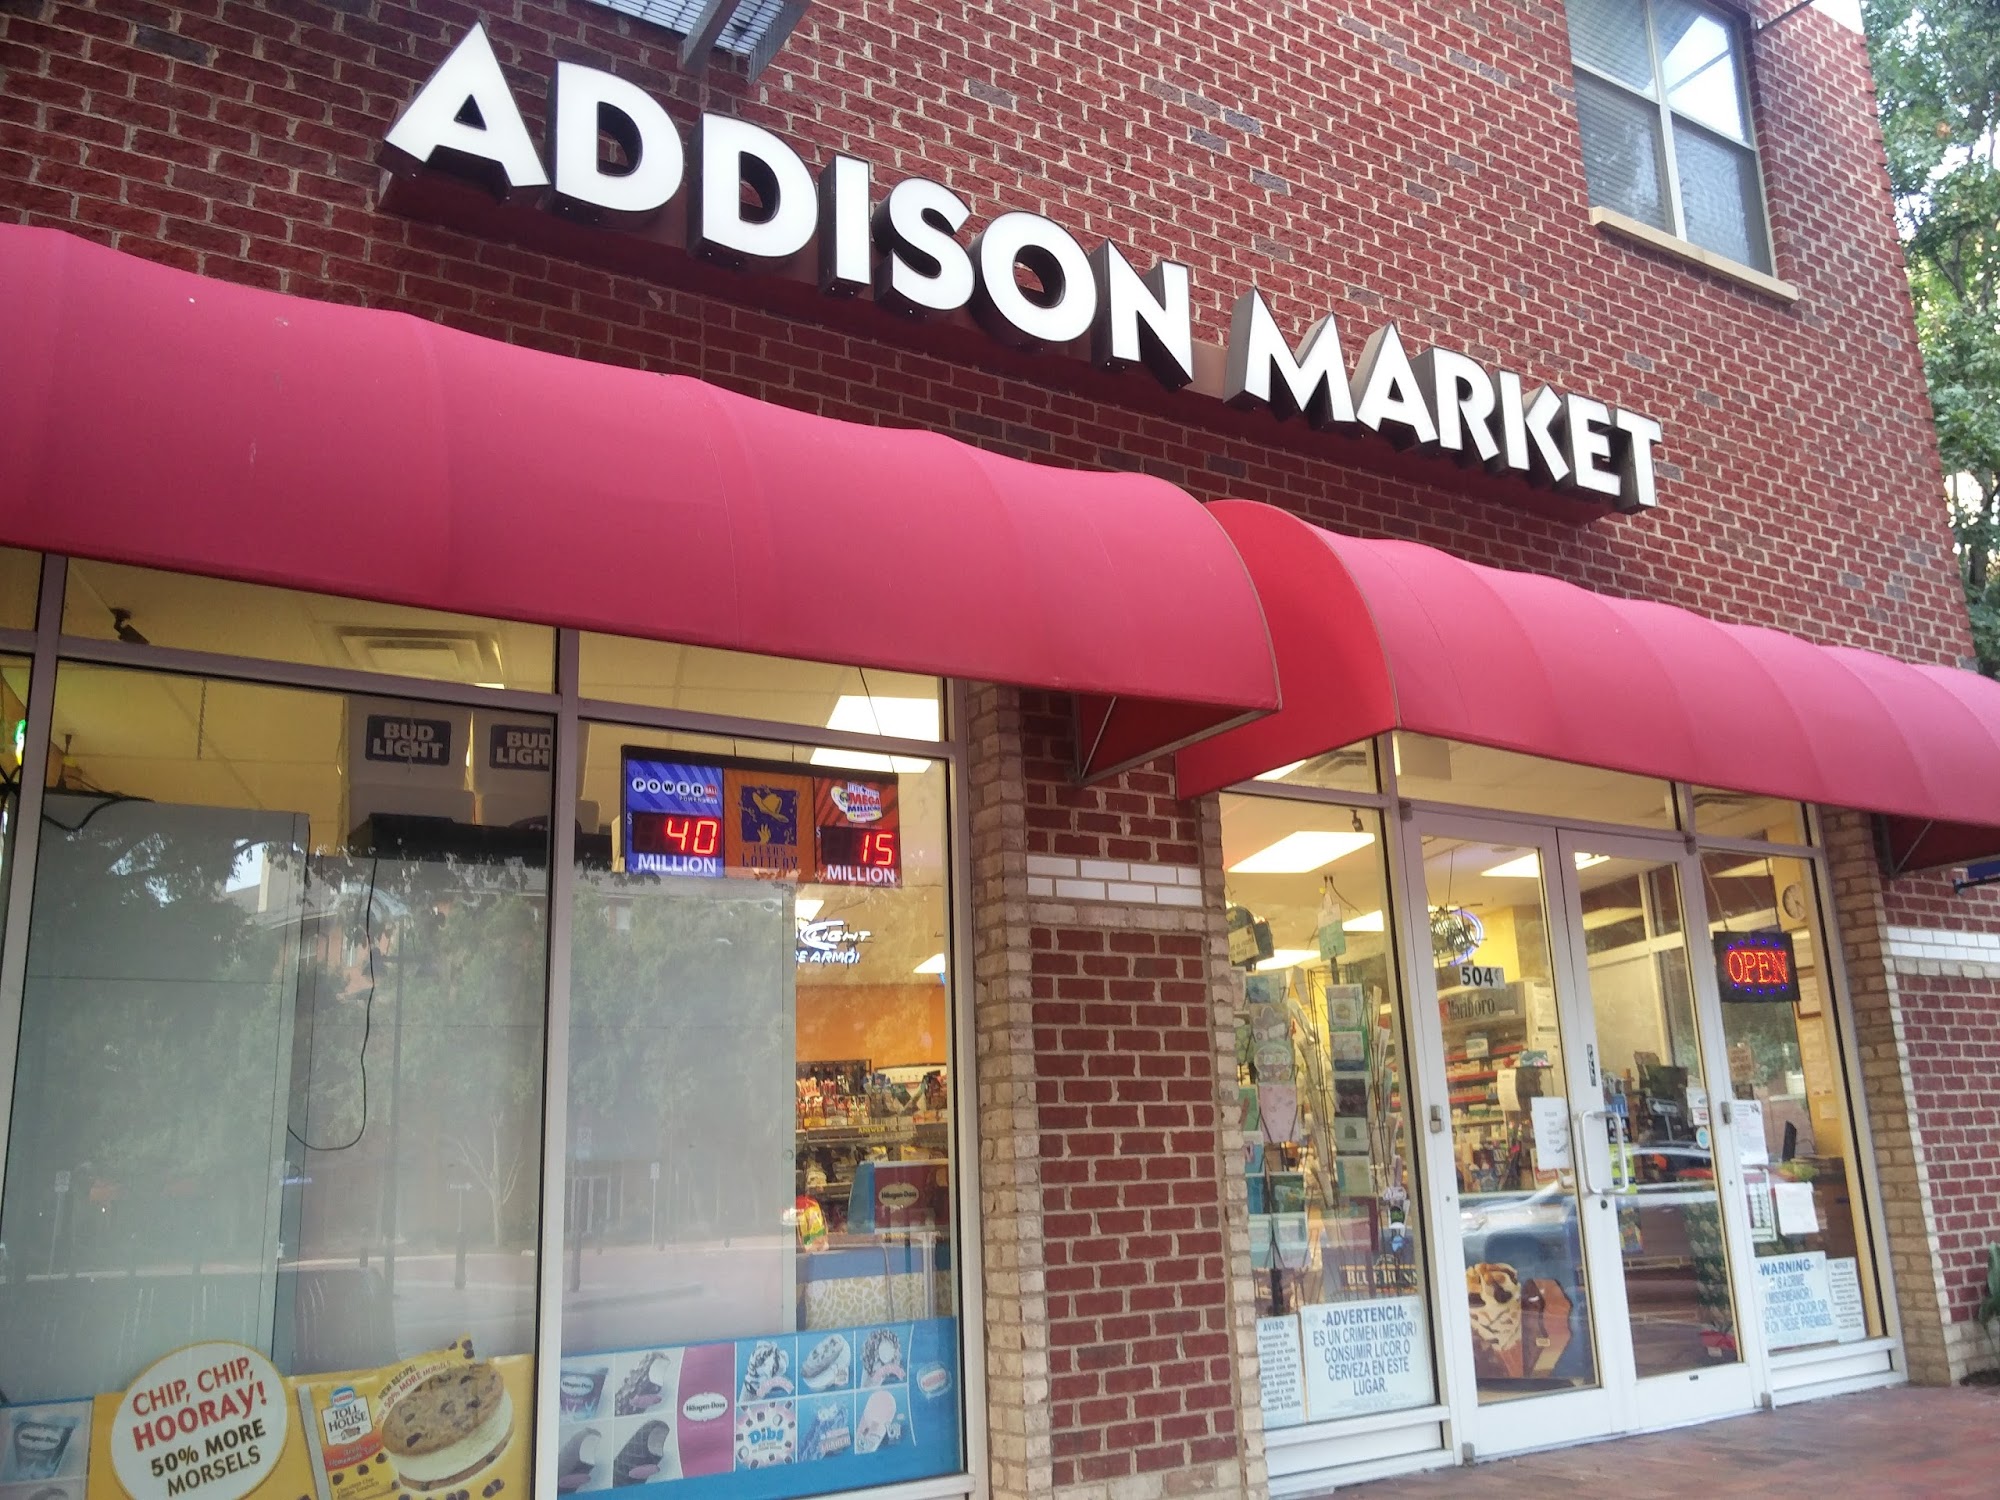 Addison Market